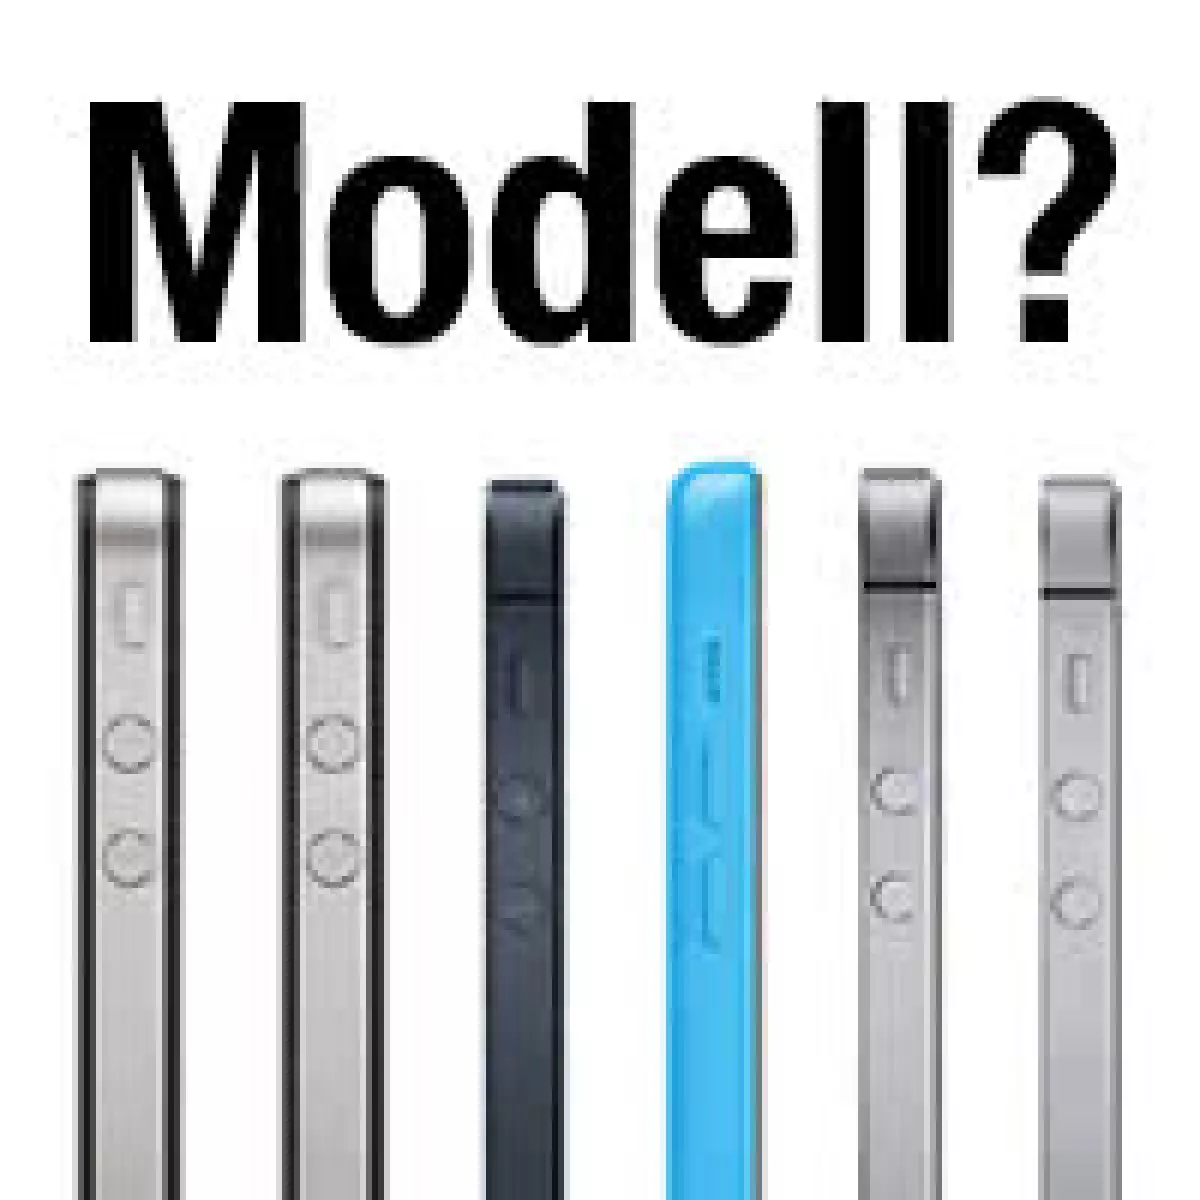 iPhone-Modell bestimmen anhand der Modellnummer